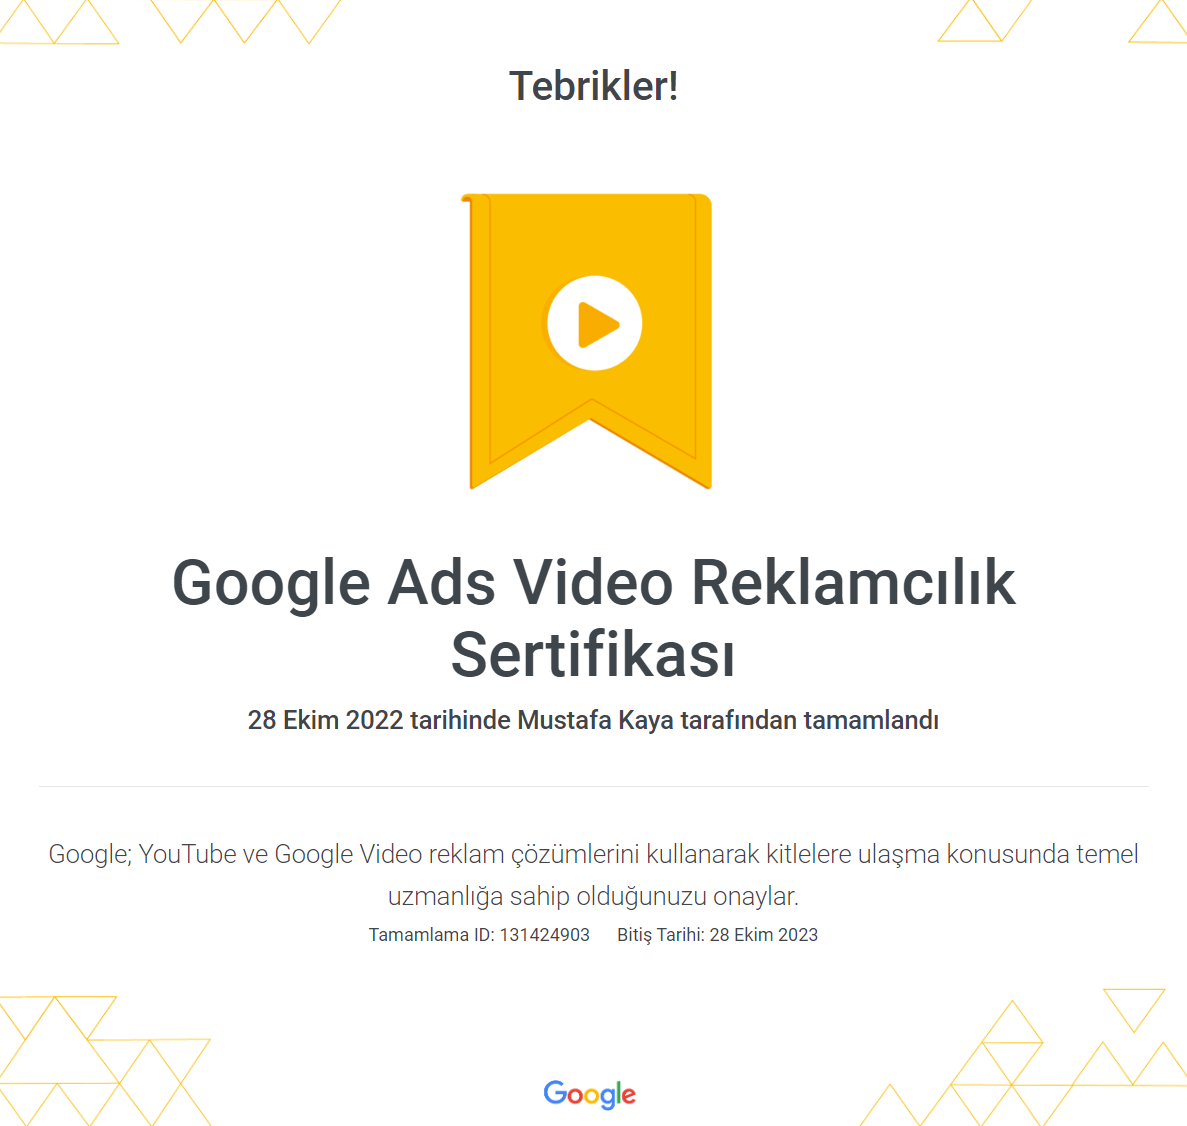 Google Ads Video Reklamcılık Sertifikası